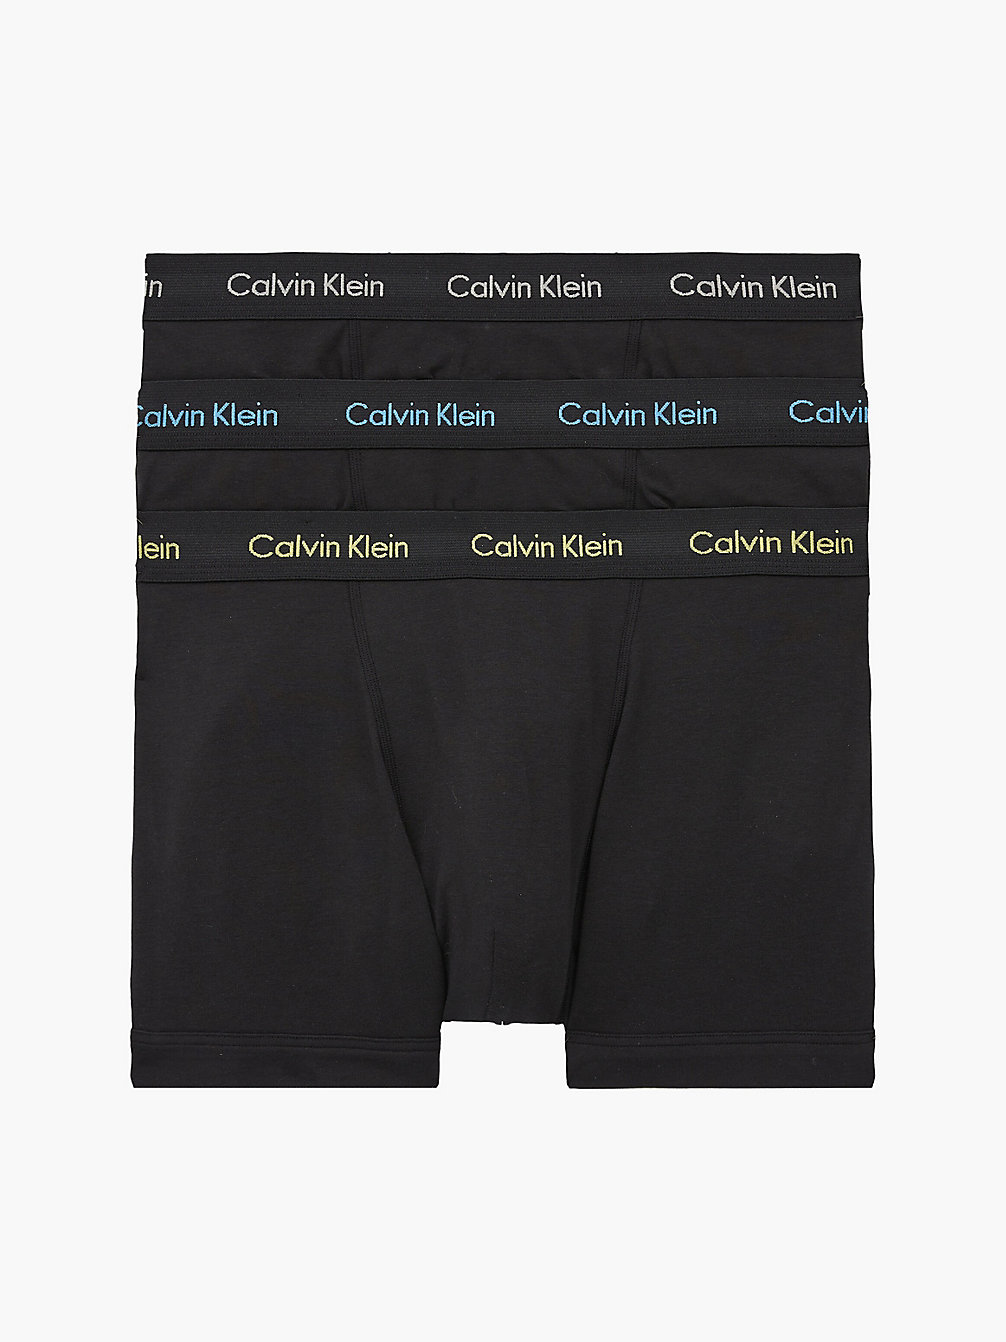 Boxer Aderenti In Confezione Da 3 - Cotton Stretch > B- OCEAN STORM/LIME/SIGNATURE BLUE > undefined uomo > Calvin Klein